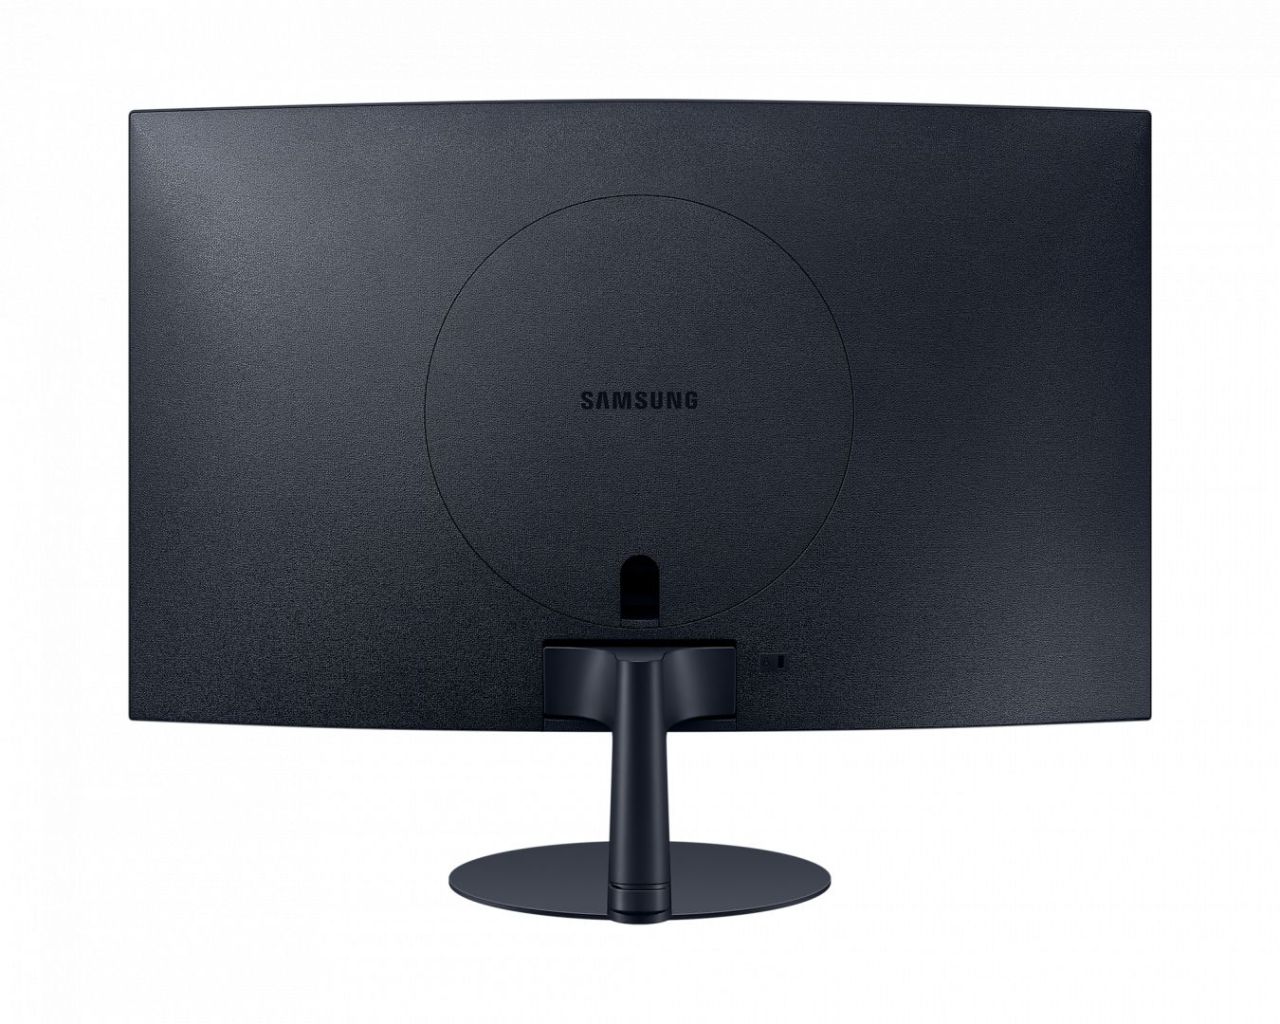 Samsung 32" LS32C390EAUXEN LED Curved